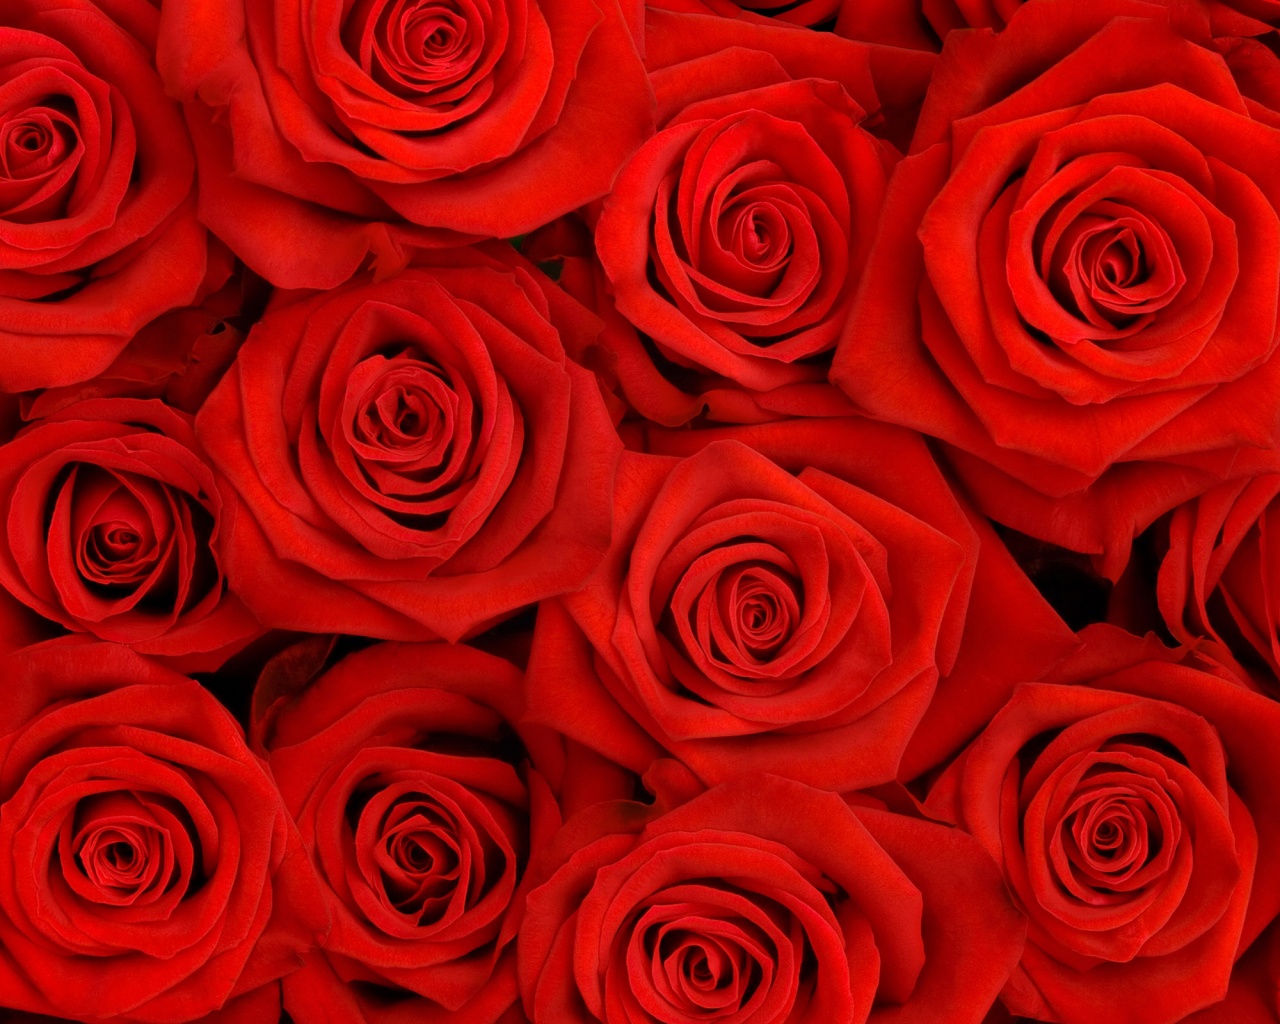 Букет красных роз обои